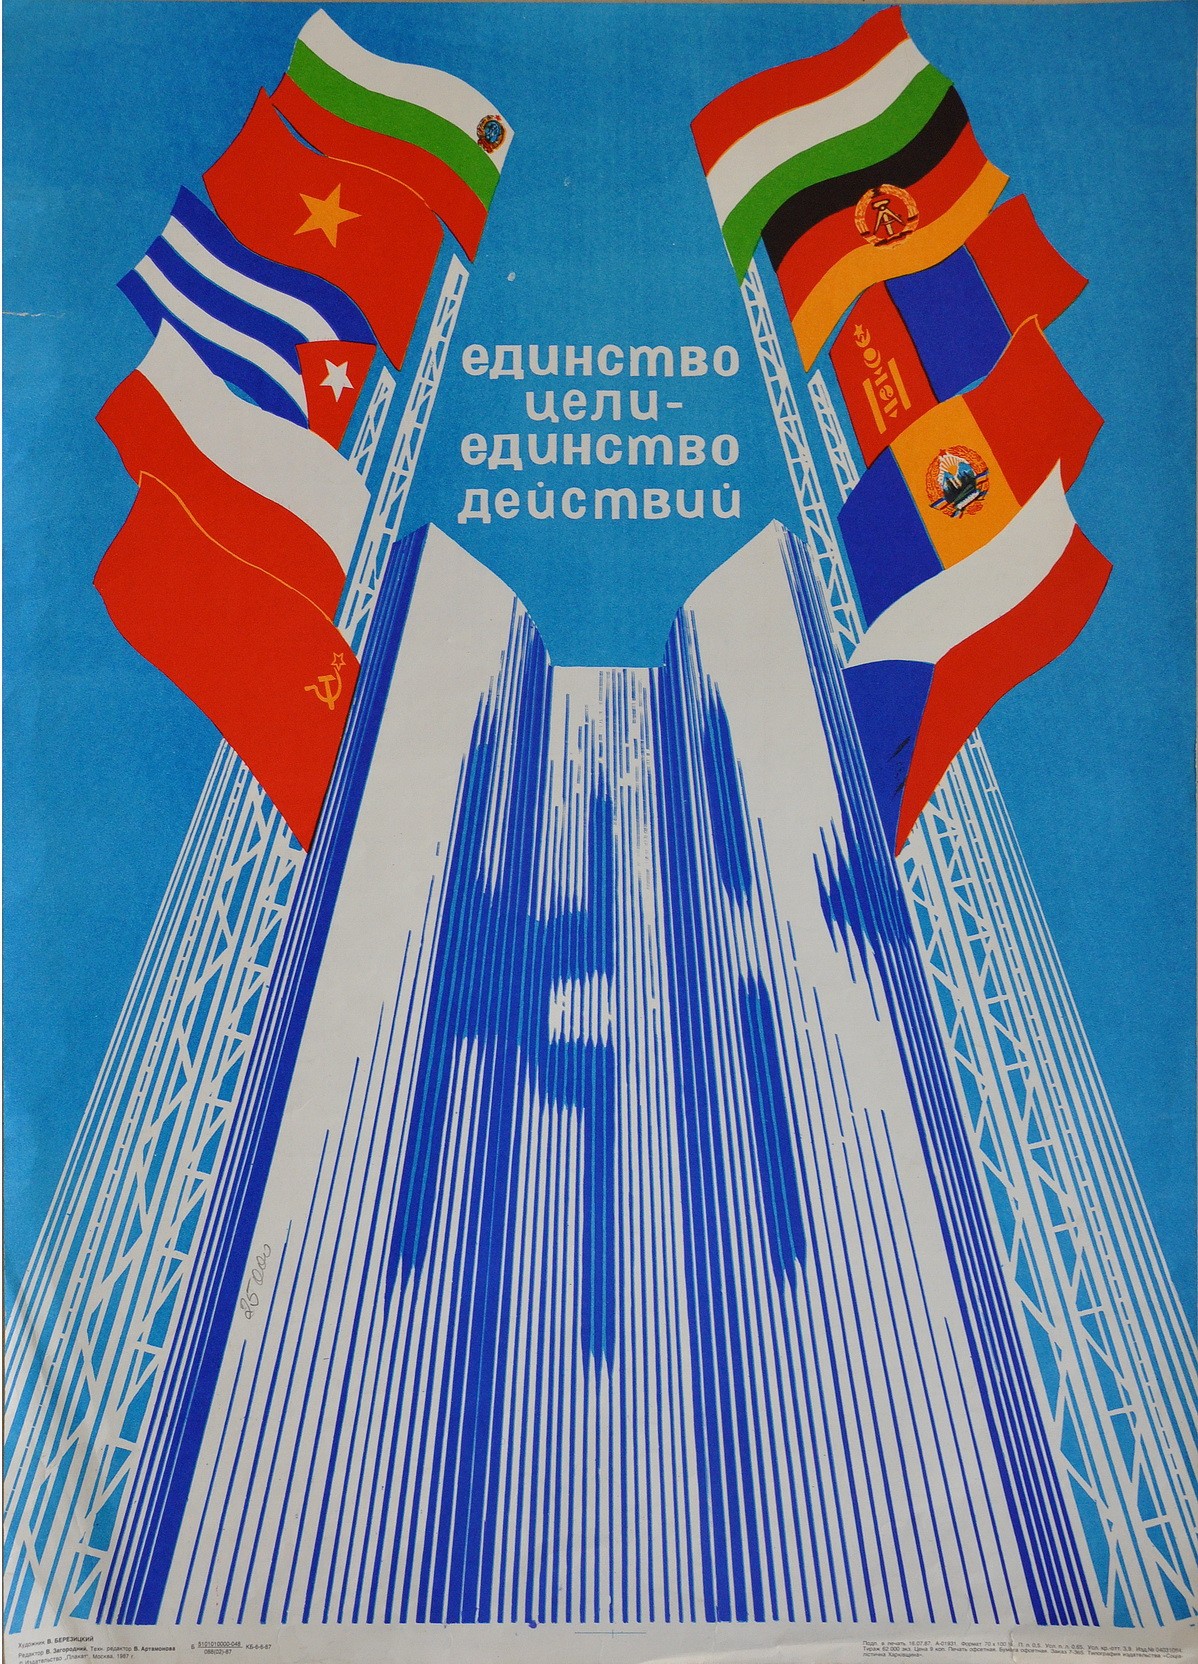 СЭВ ( совет экономической. Флаг СЭВ. Совет экономической взаимопомощи плакат. Совет экономической взаимопомощи 1949. Экономическая организация 1949